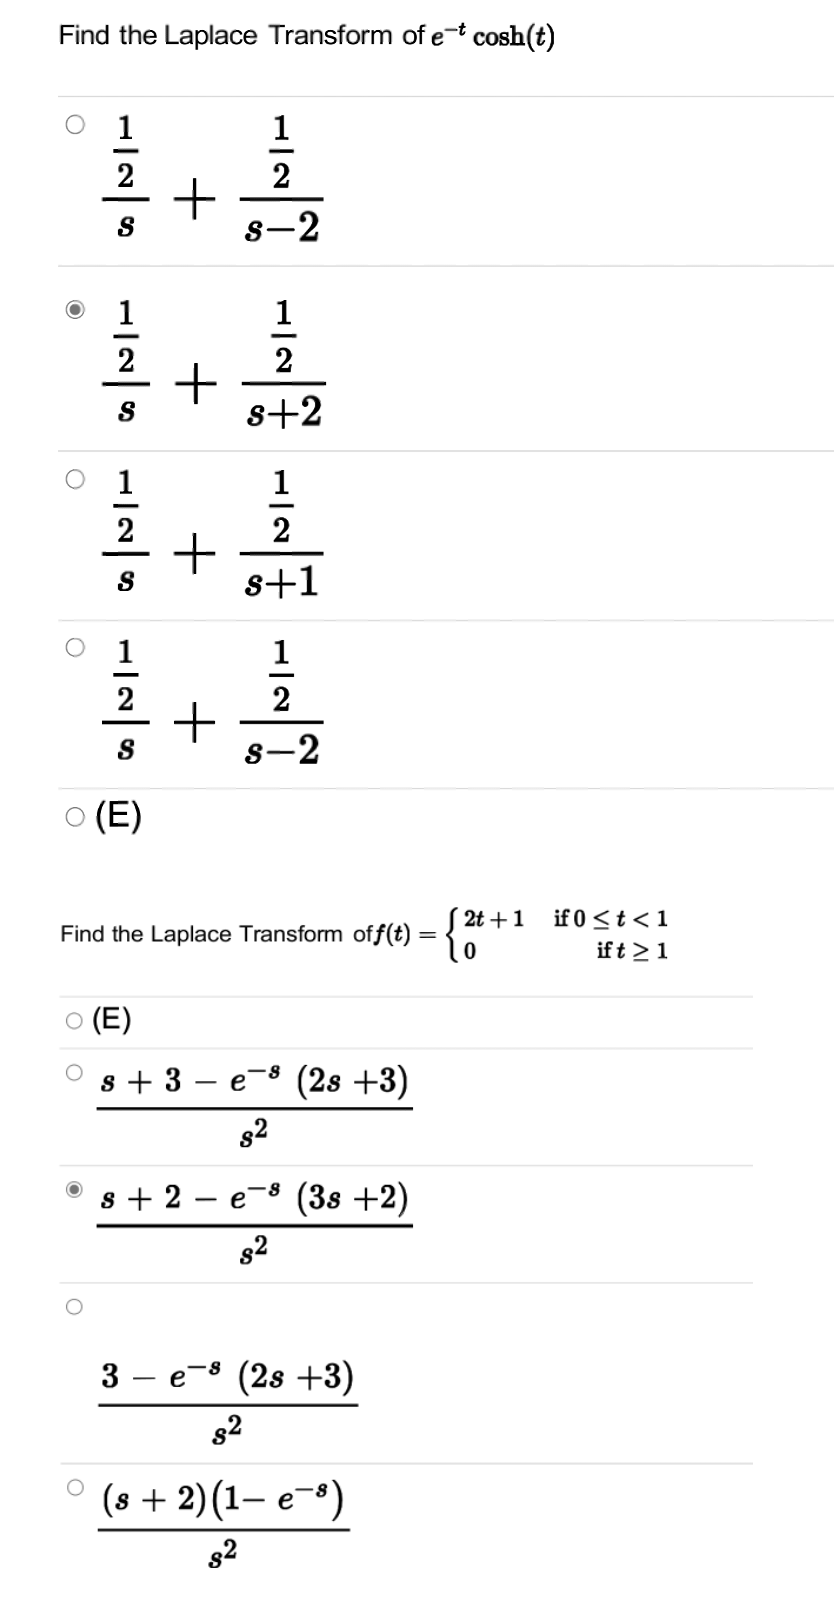 Find the Laplace Transform of et cosh(t)
1
1
2
2
8-2
1
2
s+2
1
1
+高
喜+嘉
2
2
s+1
1
2
2
S
8-2
O (E)
S 2t +1
-{**
if 0 <t < 1
Find the Laplace Transform off(t) = {
ift >1
O (E)
s + 3
e-8 (2s +3)
|
s + 2
(38 +2)
e
82
3 – e-8 (2s +3)
82
о (s + 2)(1— е ")
82
+
